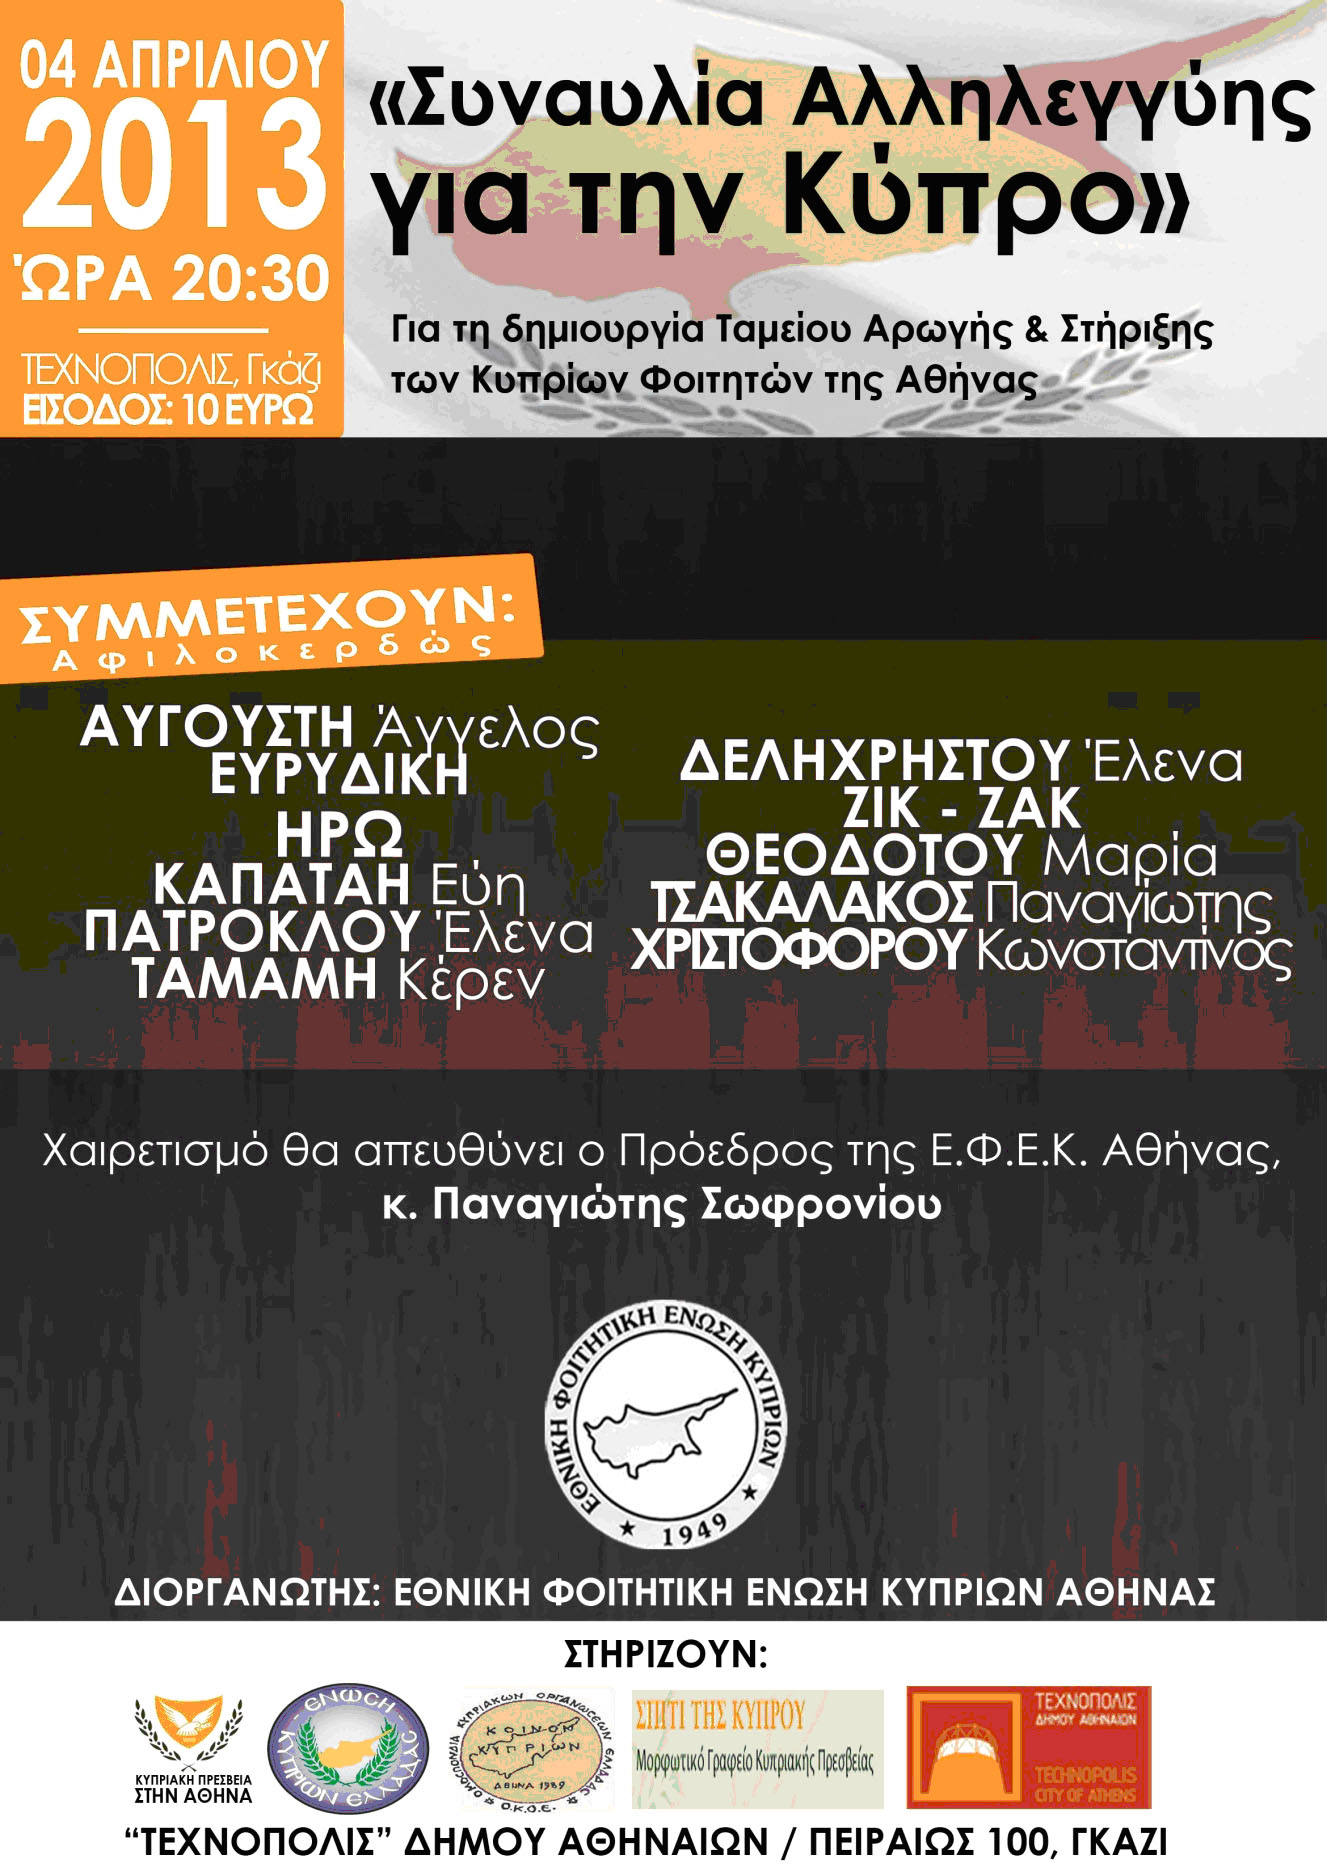 Συναυλία αλληλεγγύης για την Κύπρο